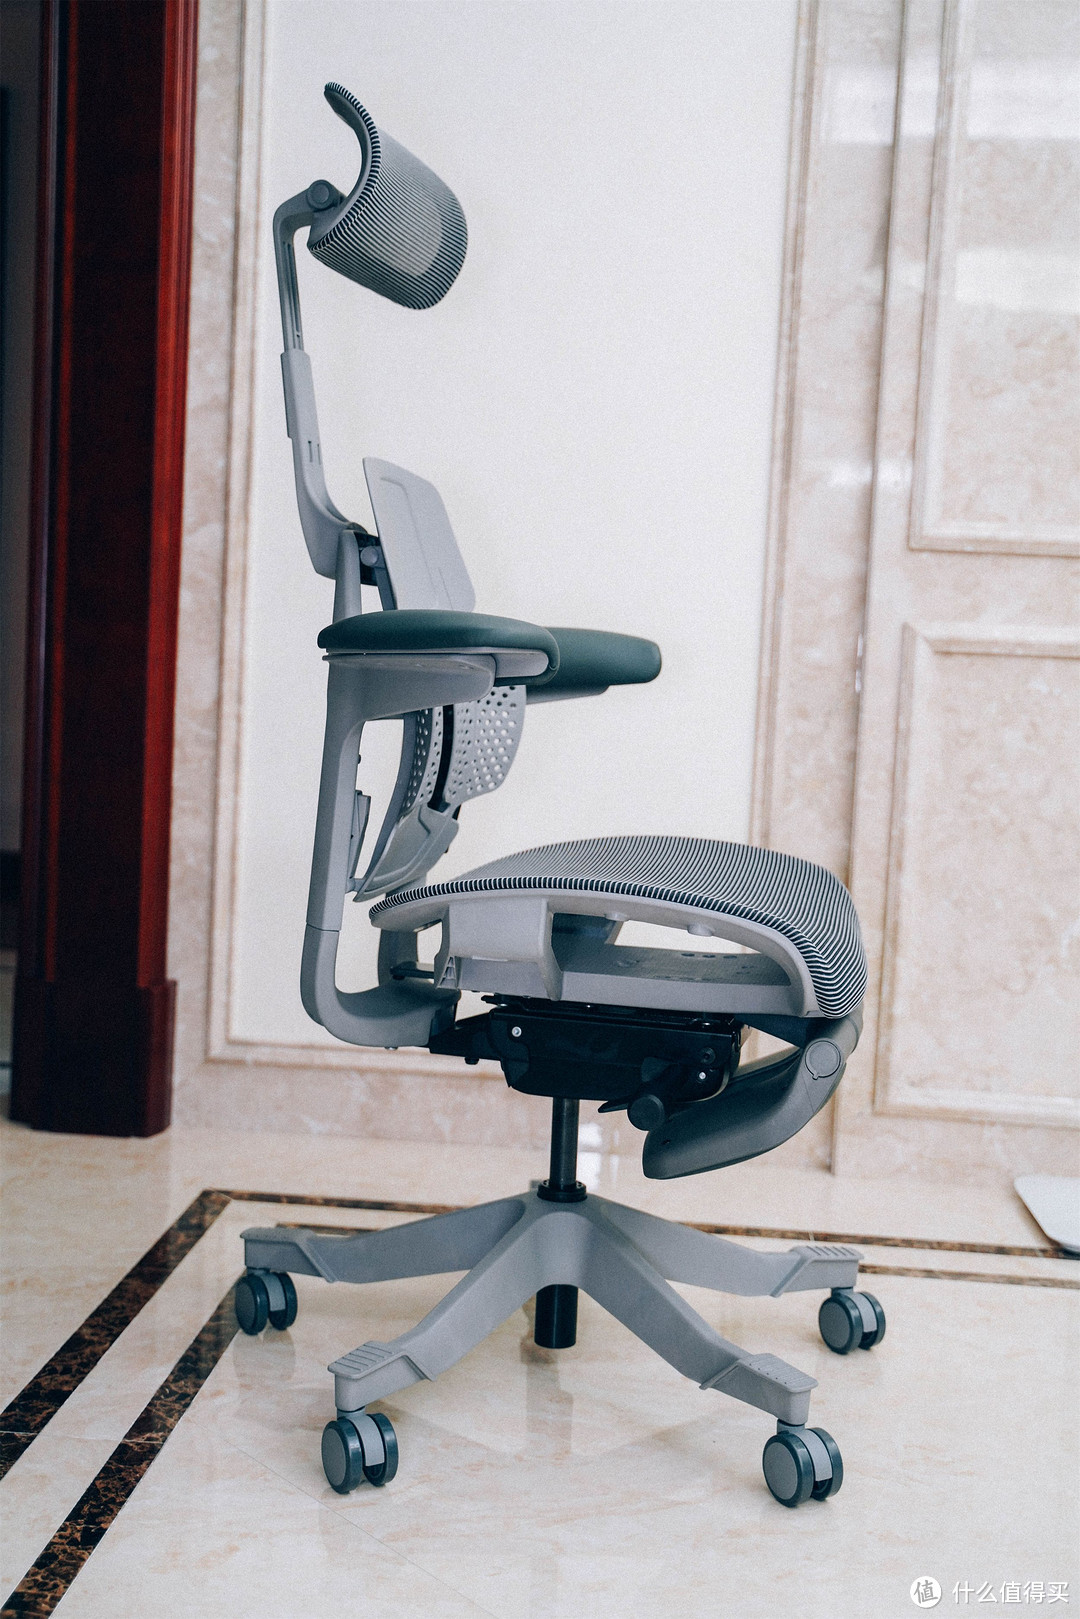 可以拉伸脊柱的人体工学椅——摩伽Verte Pro脊柱椅2.0体验